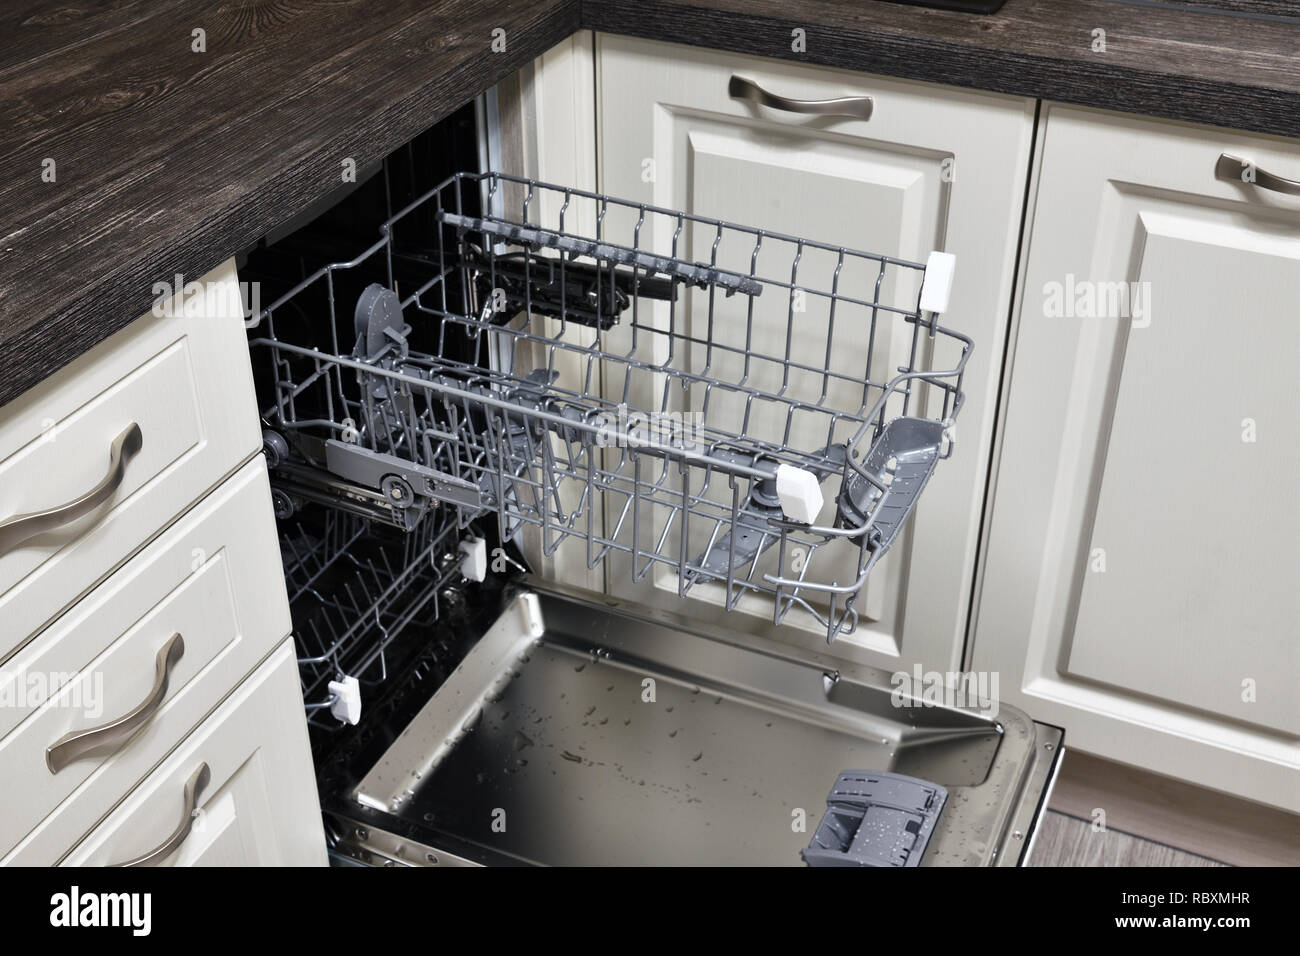 Ouvrir le lave-vaisselle intégré dans la cuisine Banque D'Images